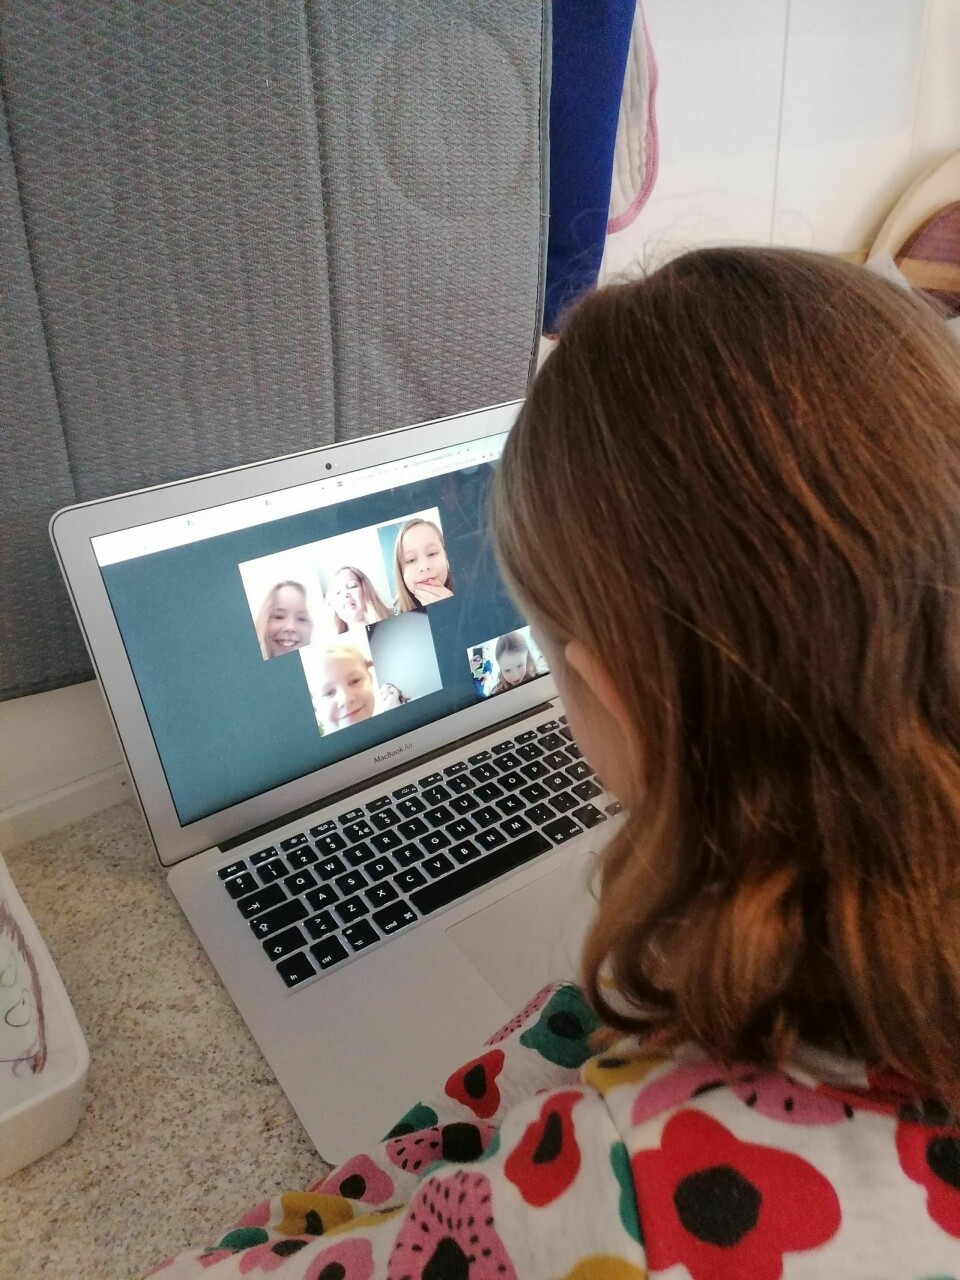 FRIMINUTT: Anna Marie Sandal Strømseng har digitalt friminutt der hun møter klassevenninnene i en videosamtale.